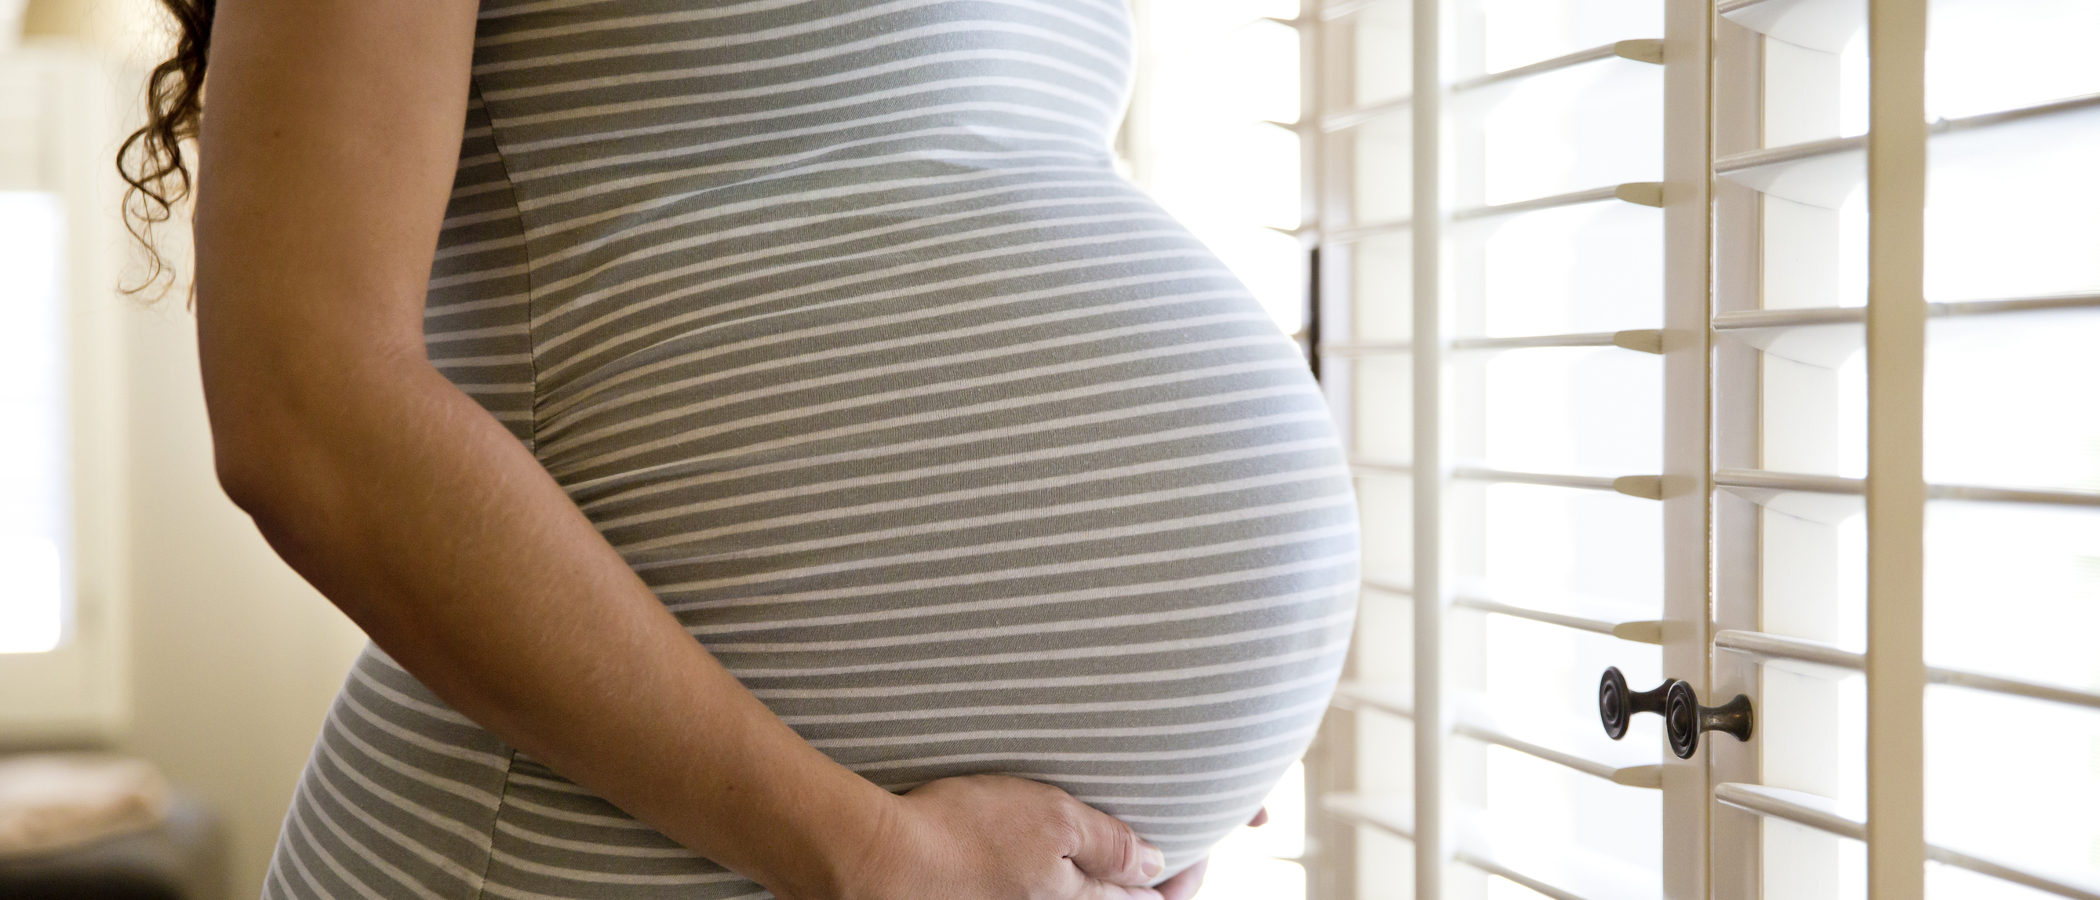 Cistitis o infección de orina durante el embarazo